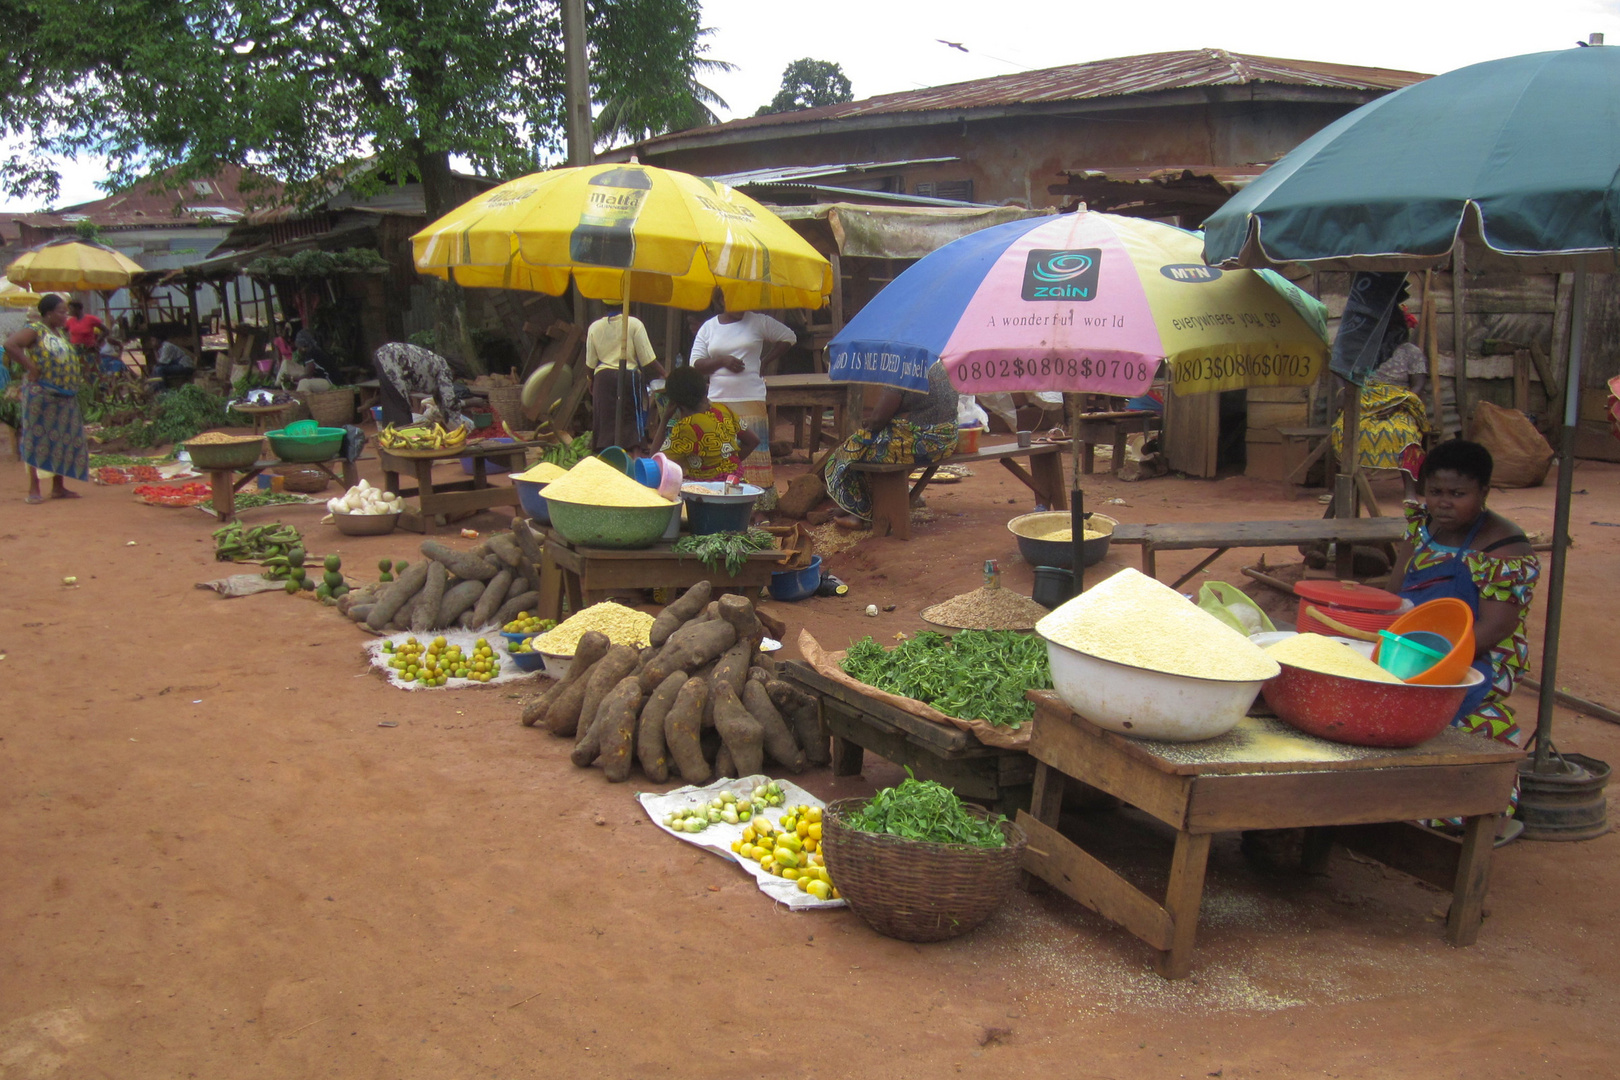 Market, Nigeria, Benin City, August 2011